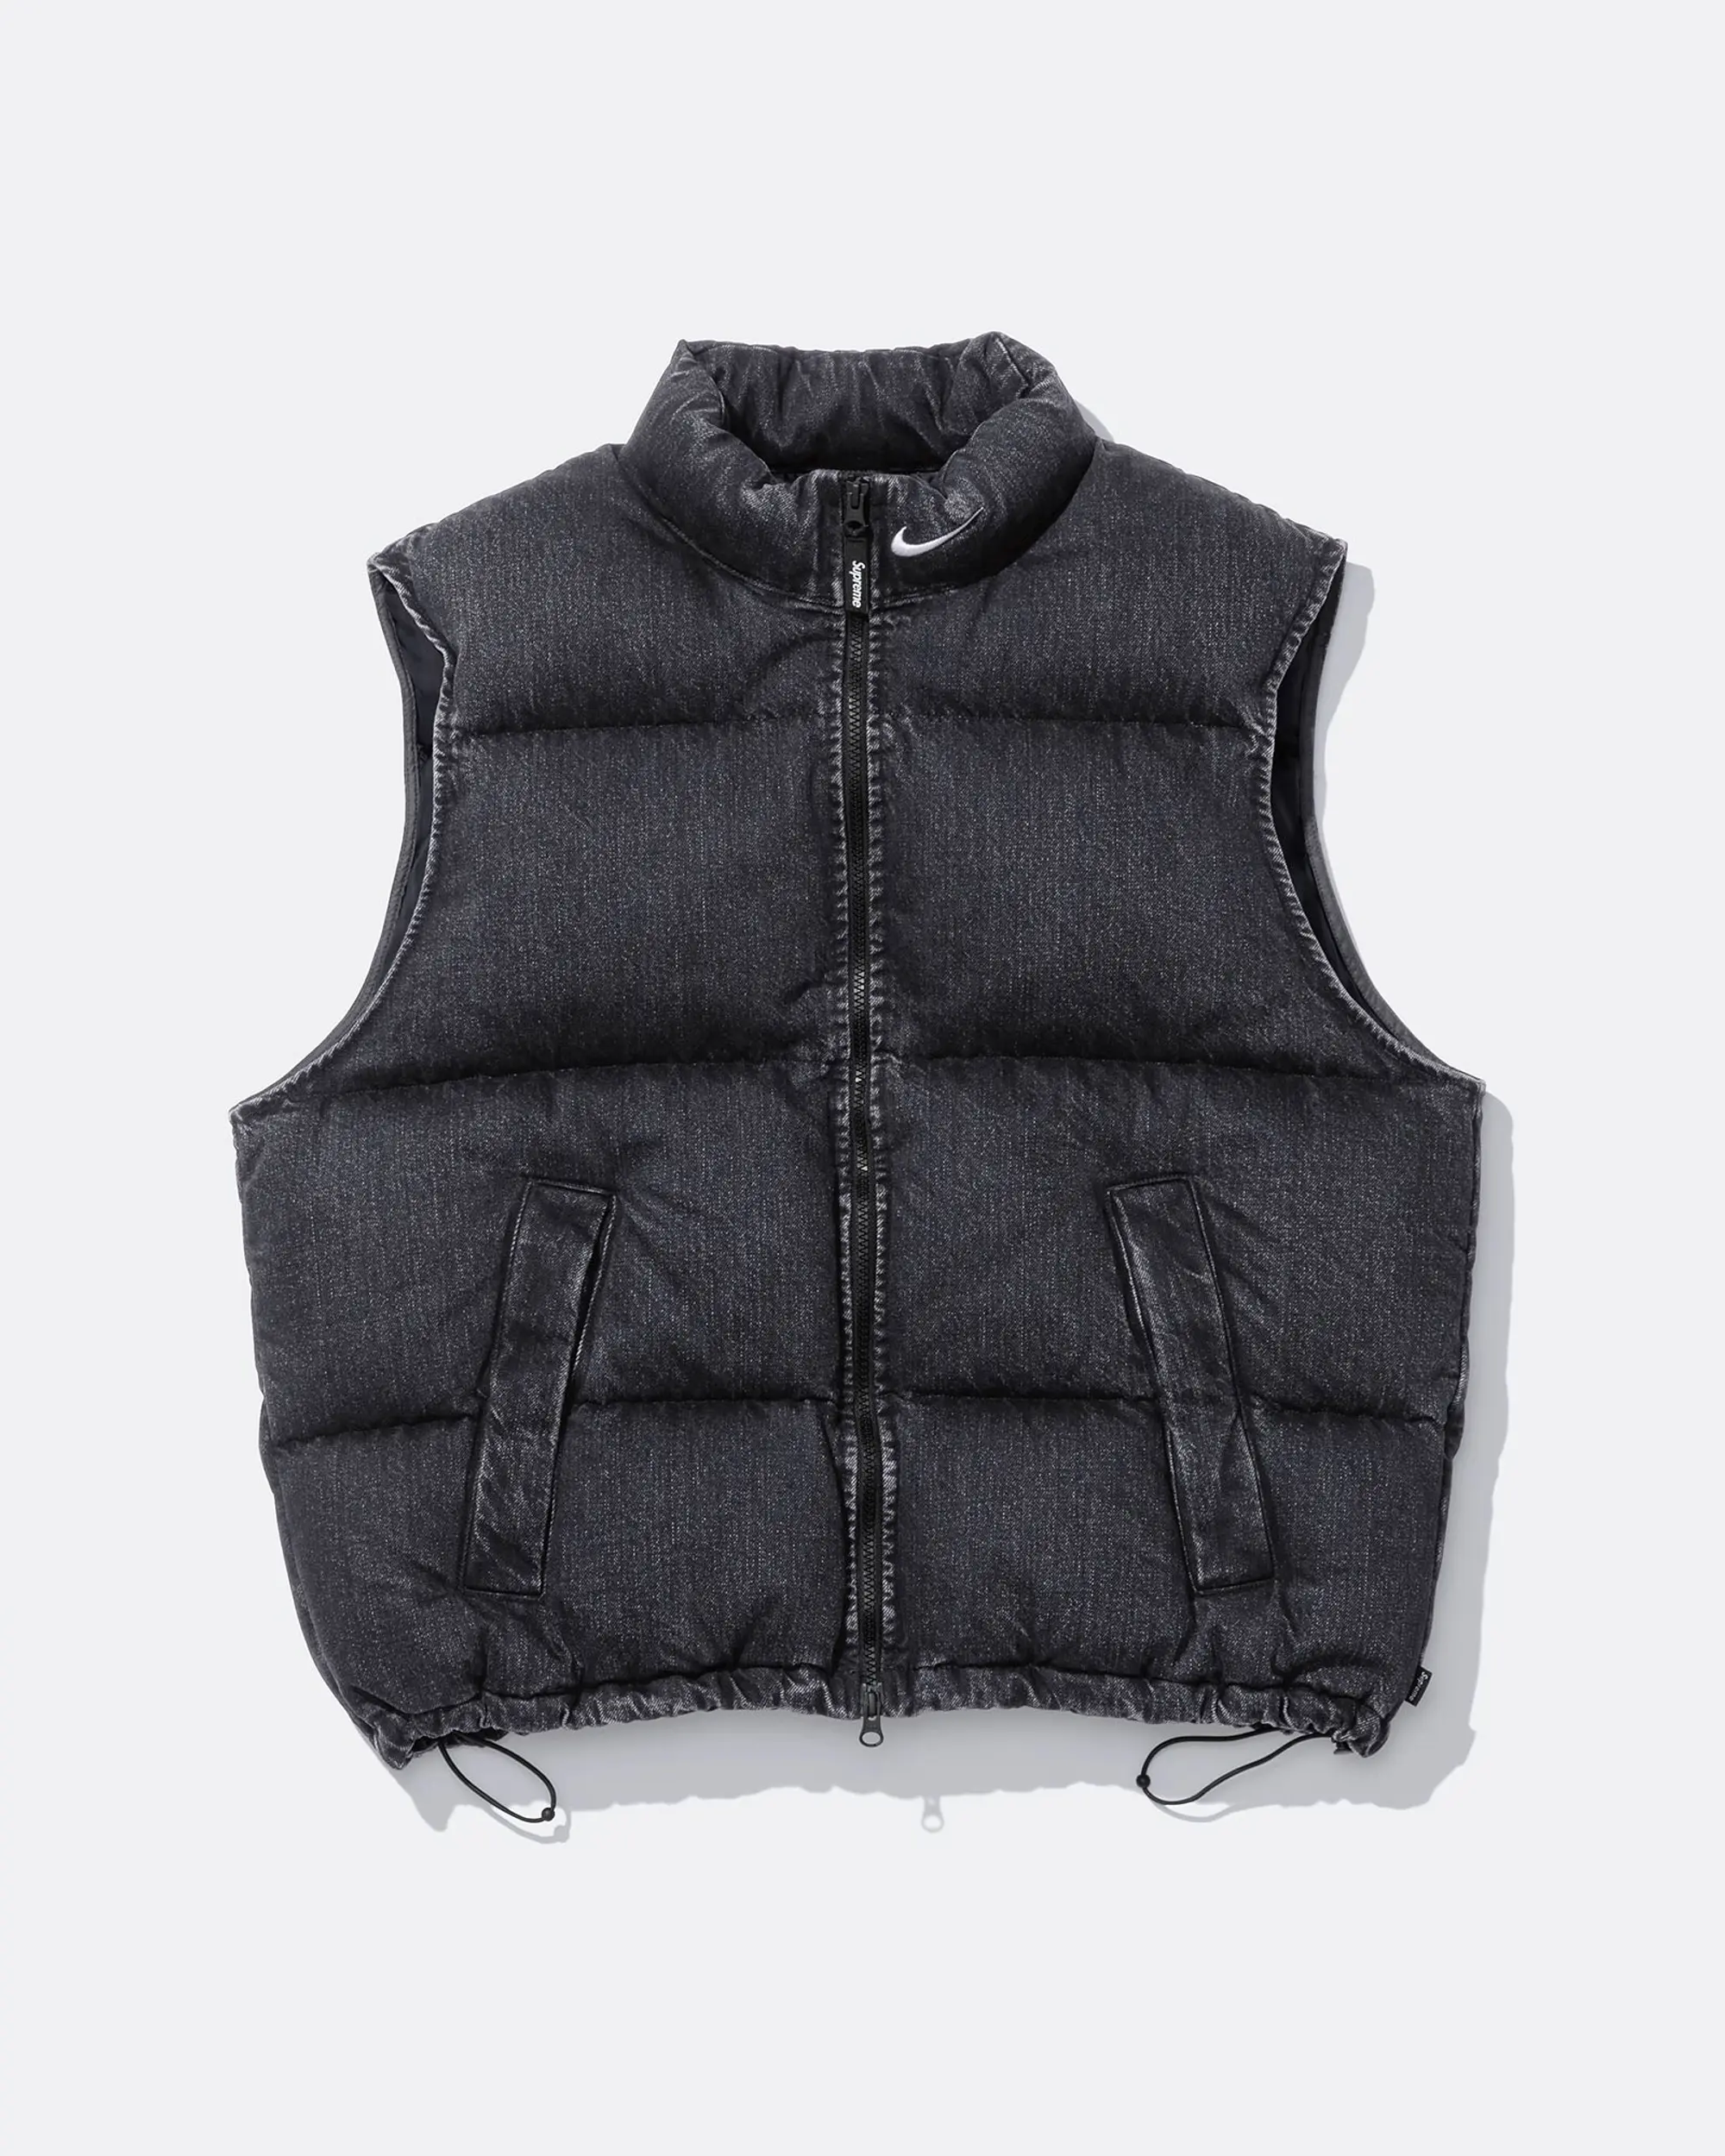 Supreme®/Nike® Denim Puffer Vest | Supreme 24ss